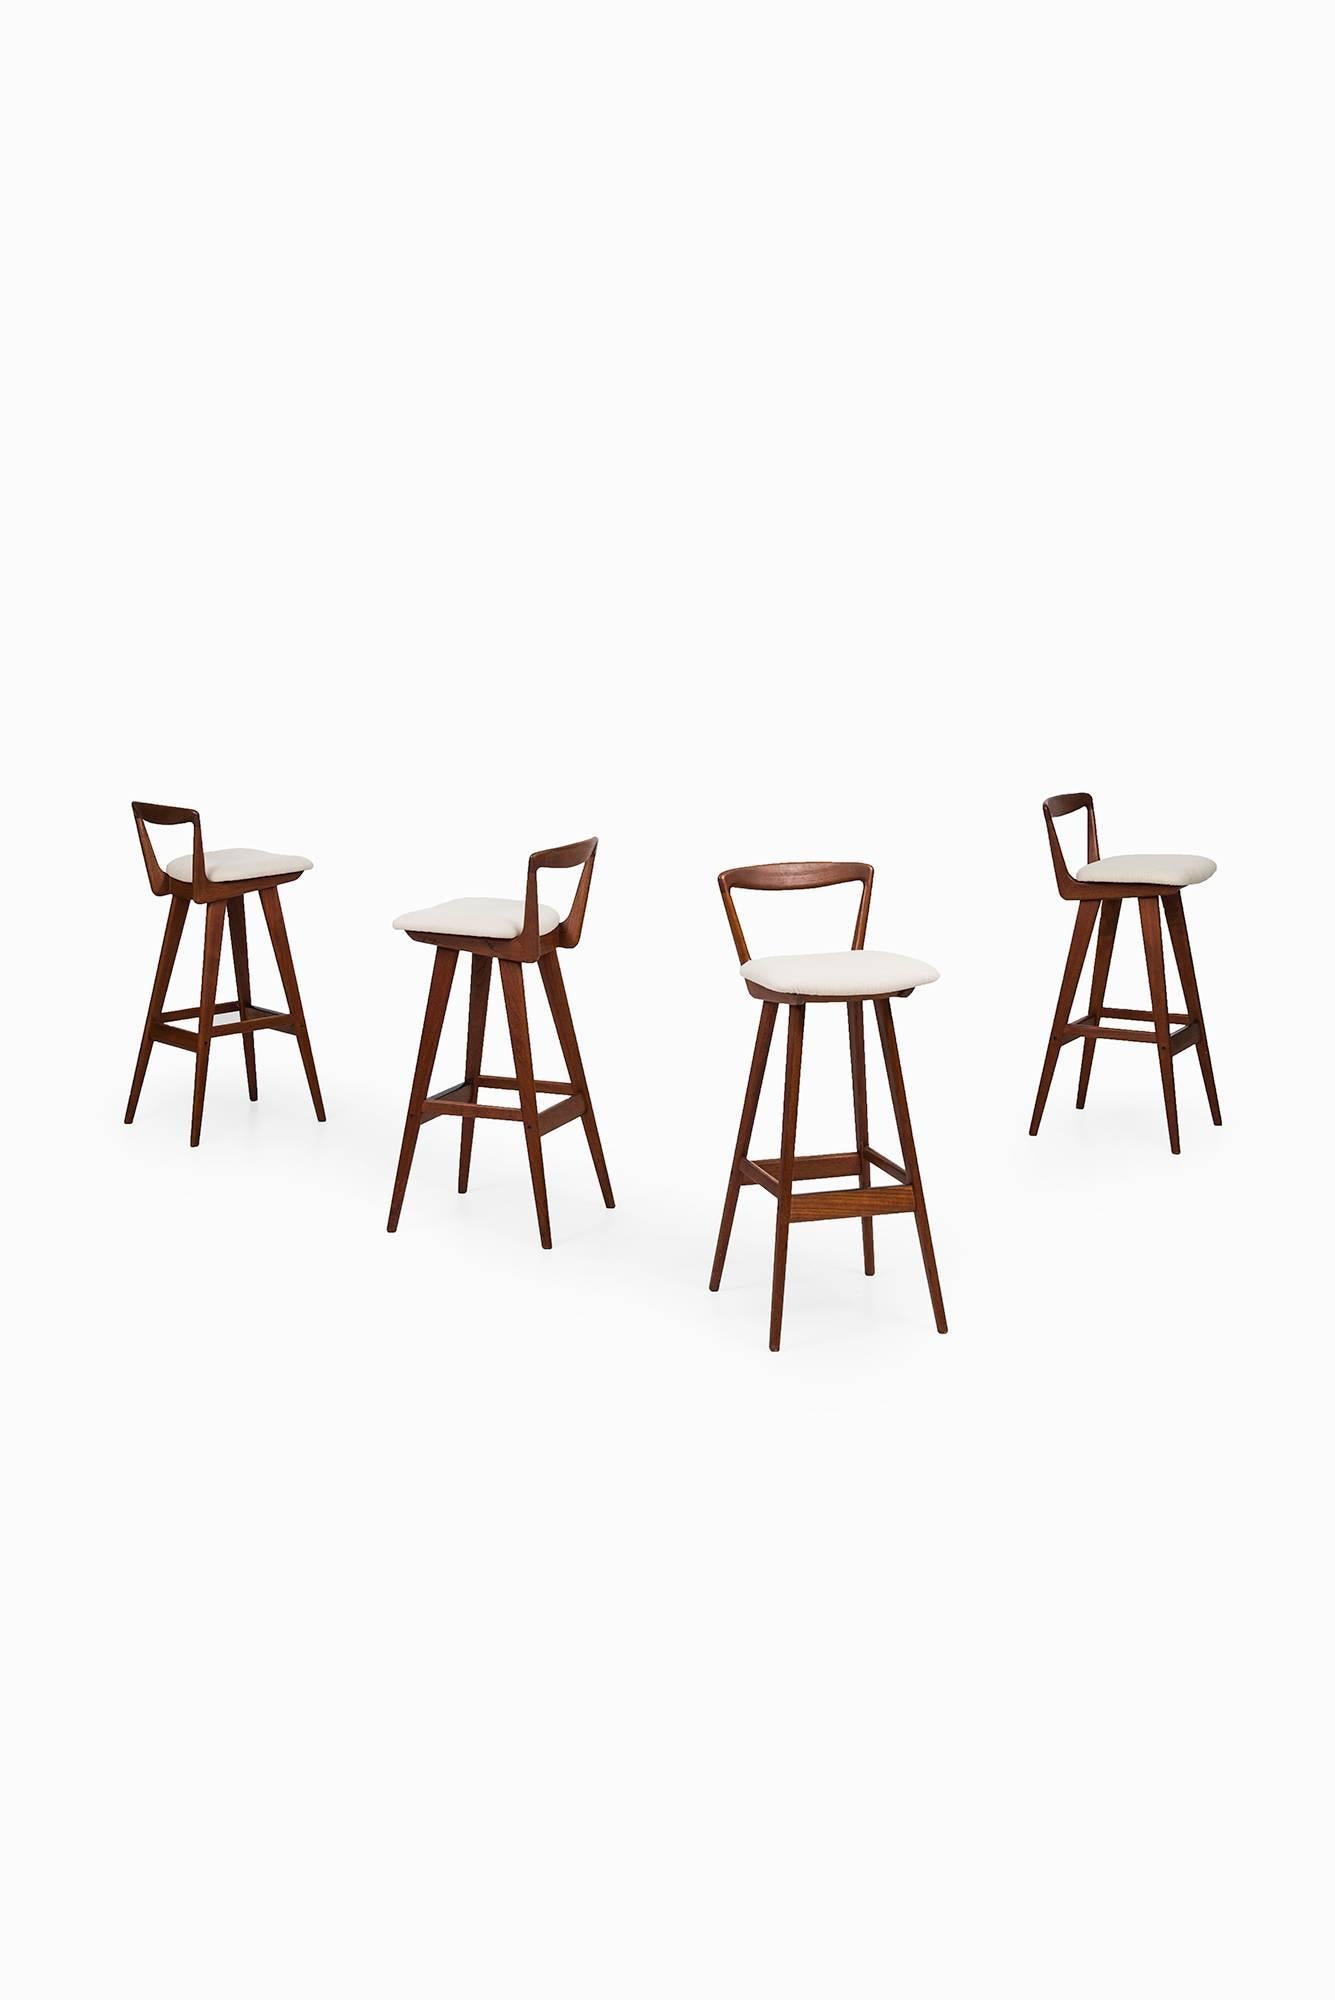 Rare set of four bar stools model 43 designed by Henry Rosengren Hansen. Produced by Brande Møbelfabrik in Denmark.